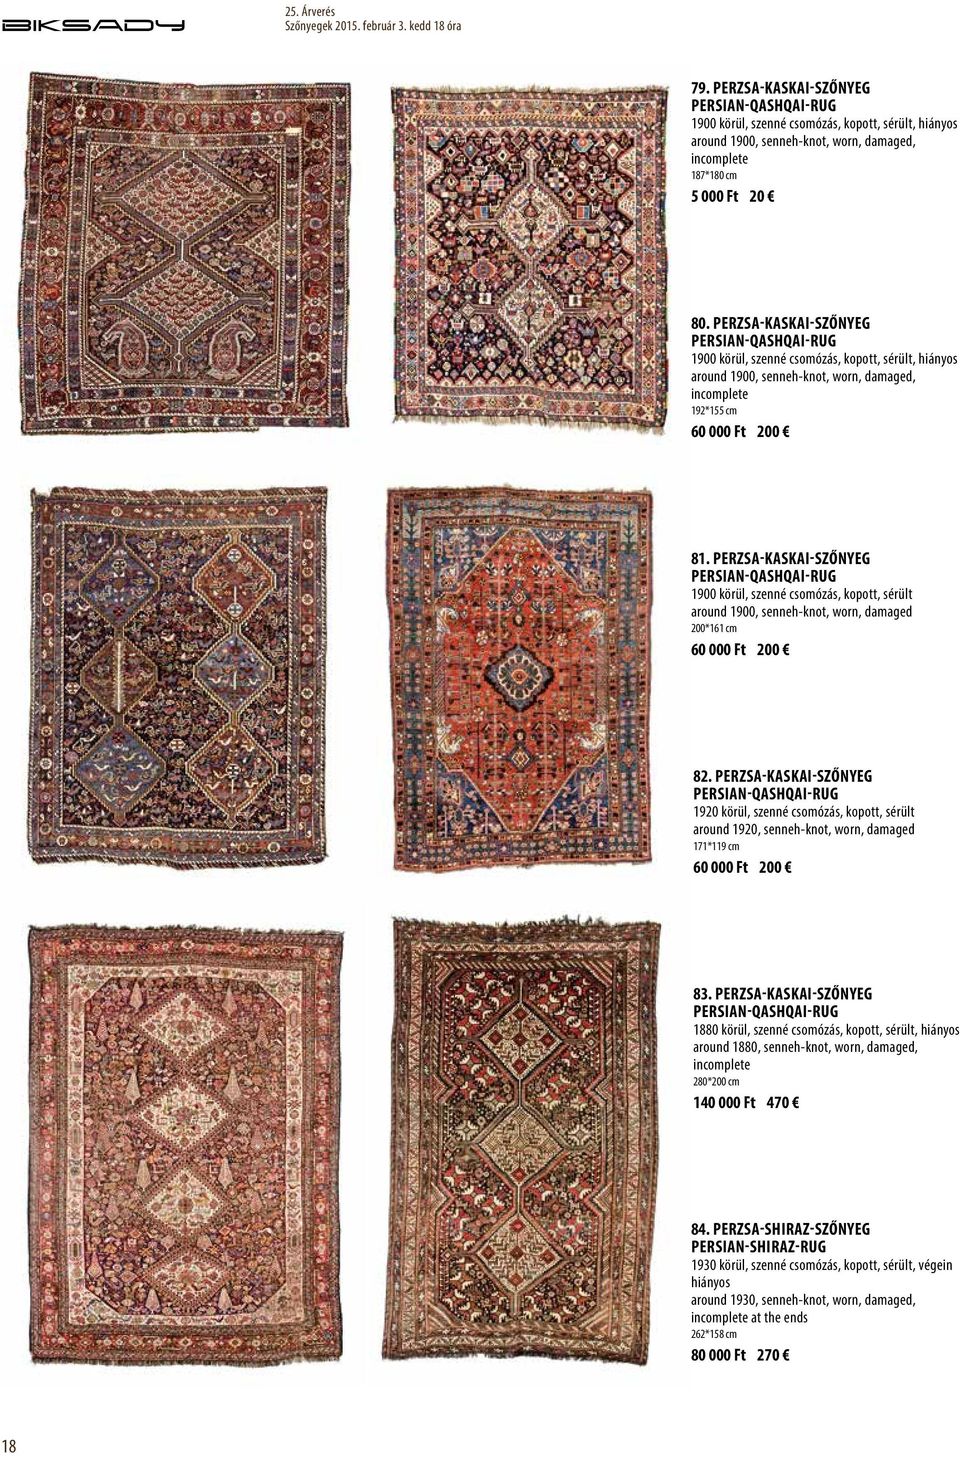 Perzsa-Kaskai-szőnyeg Persian-Qashqai-rug 1900 körül, szenné csomózás, kopott, sérült around 1900, senneh-knot, worn, damaged 200*161 cm 60 000 Ft 200 82.